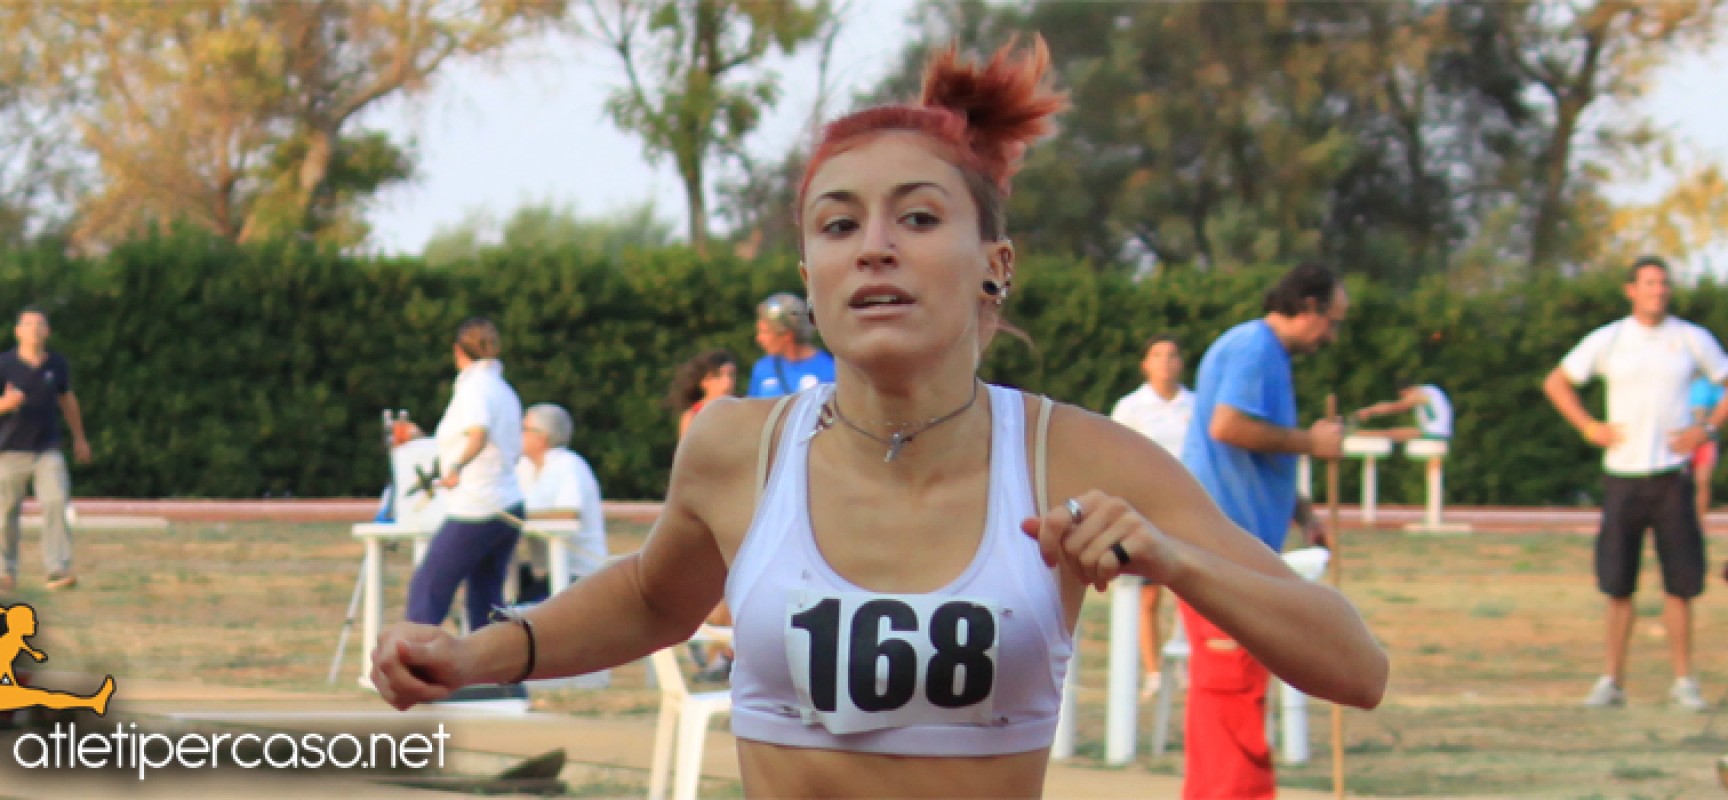 Atletica, argento nei 400 m. per Lucia Pasquale ai campionati italiani Juniores